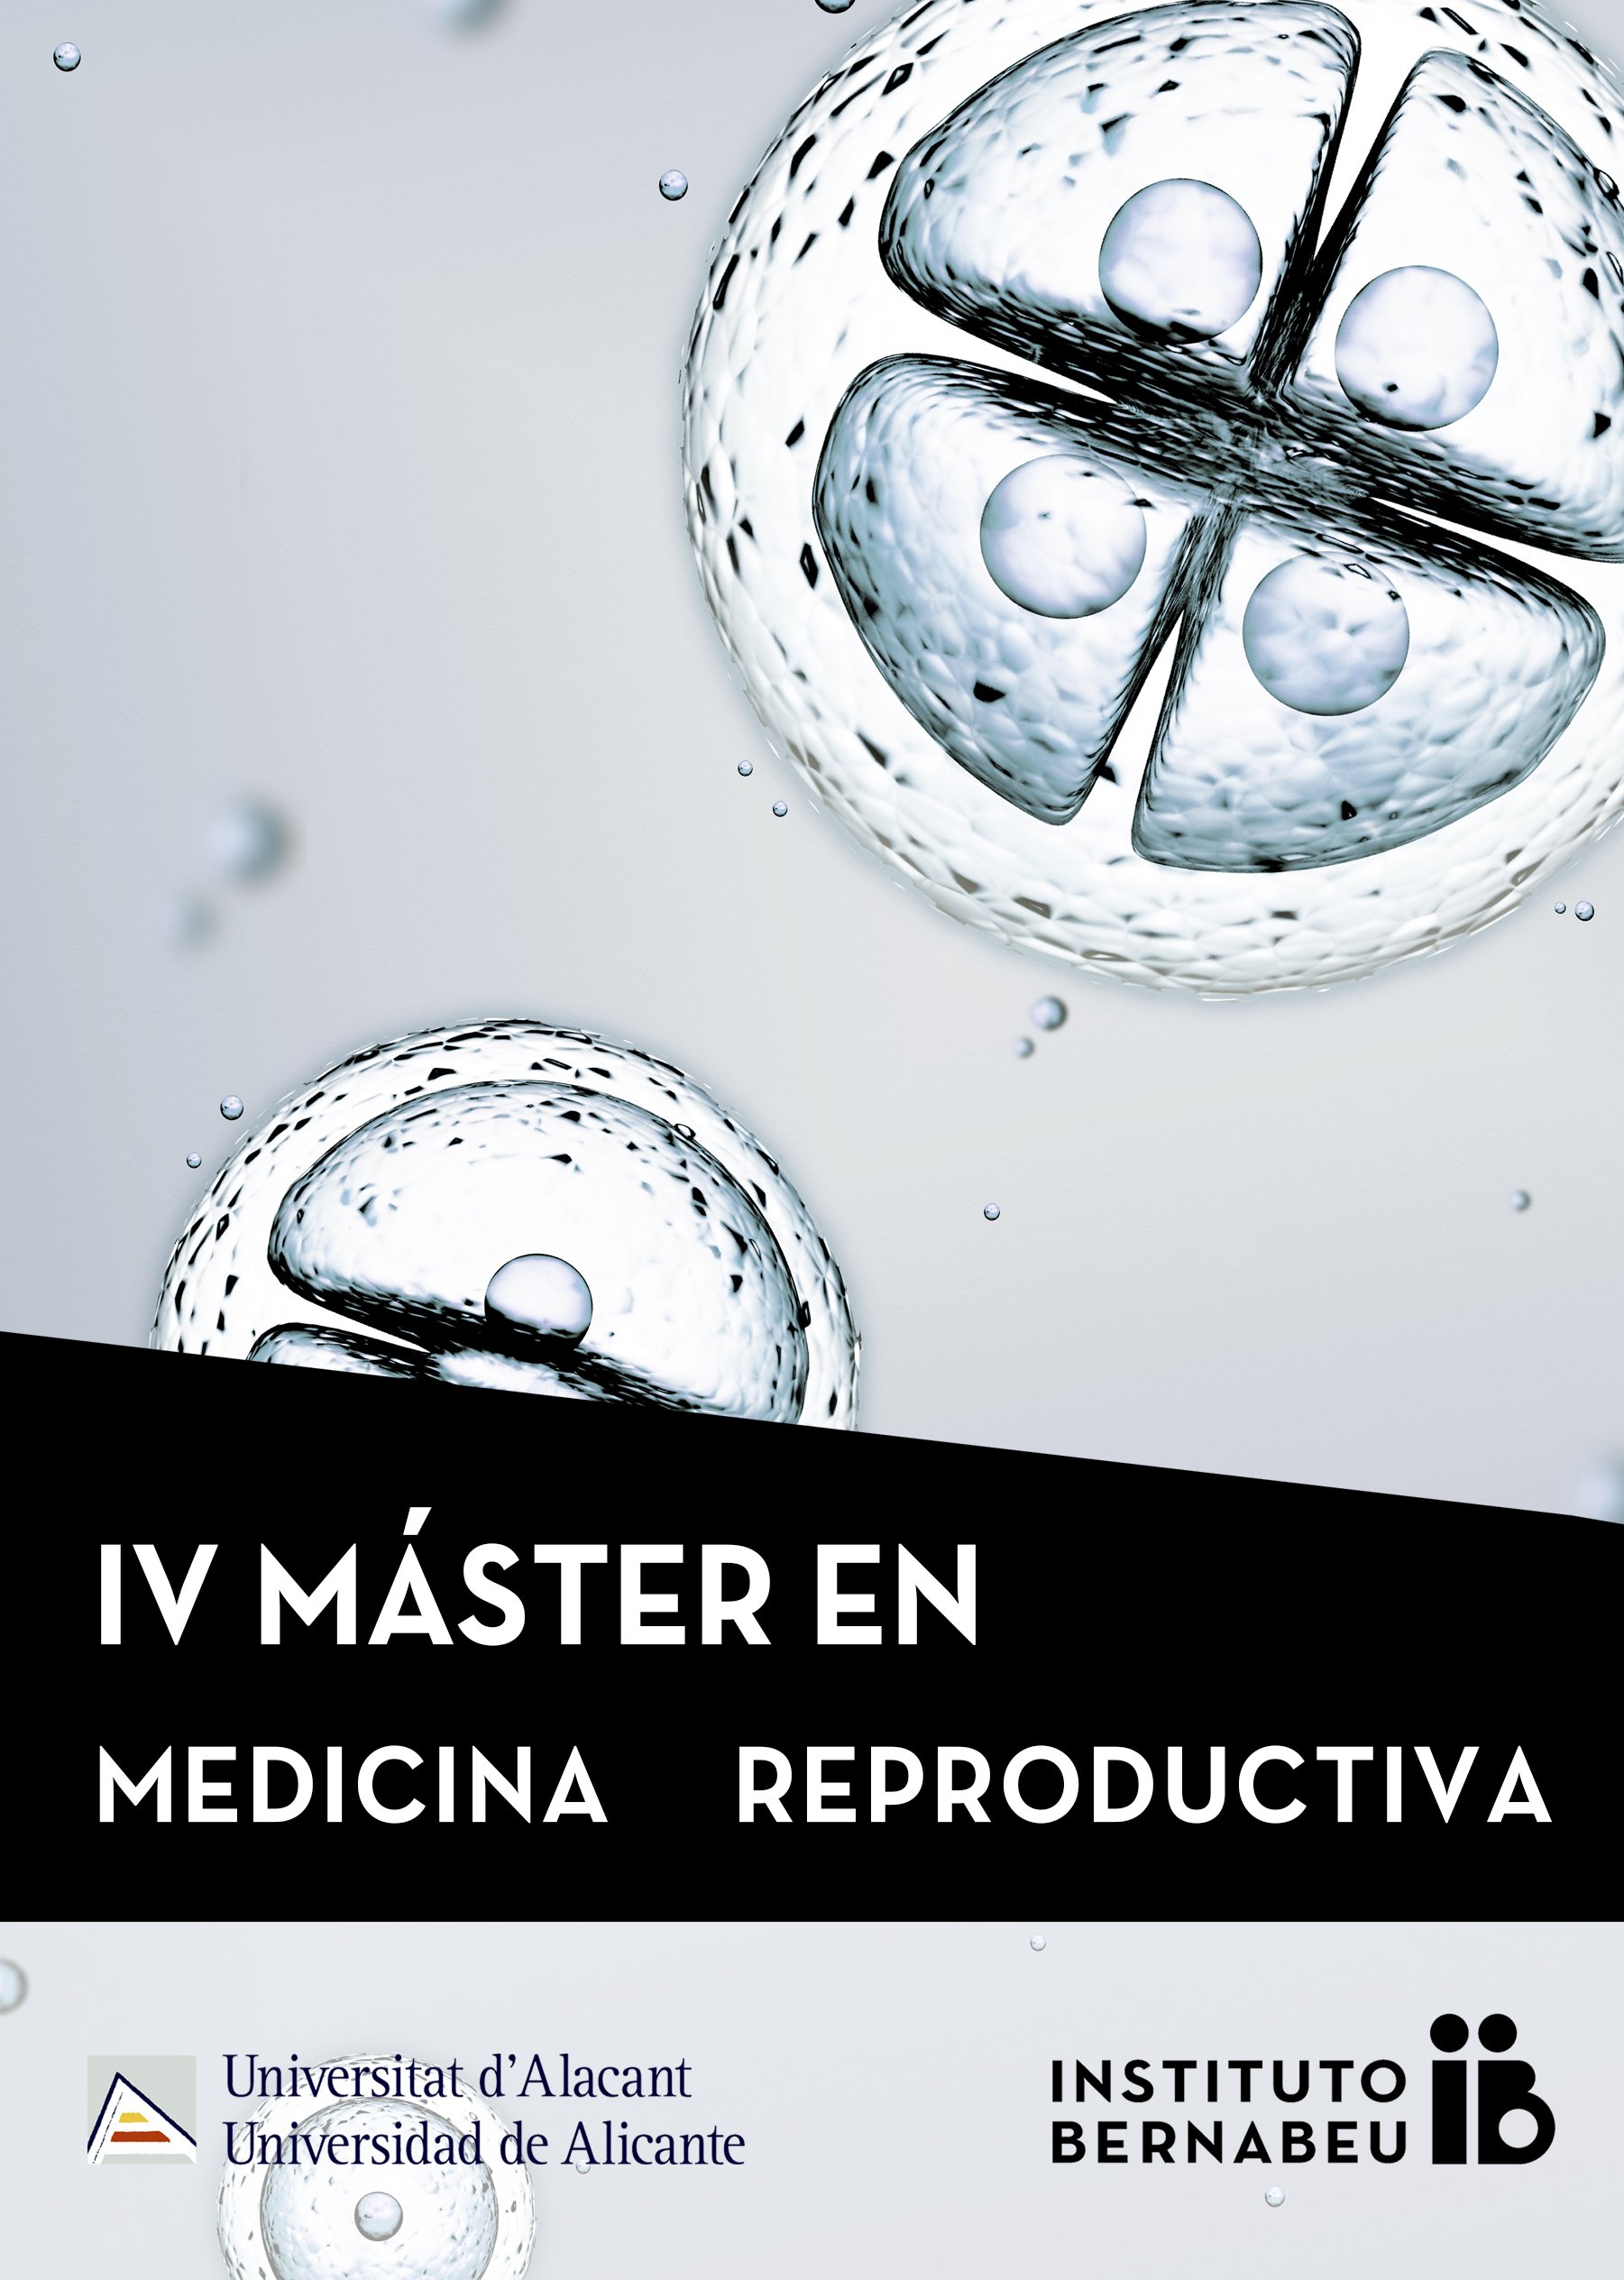 IV Máster en Medicina Reproductiva Universidad de Alicante - Instituto Bernabeu